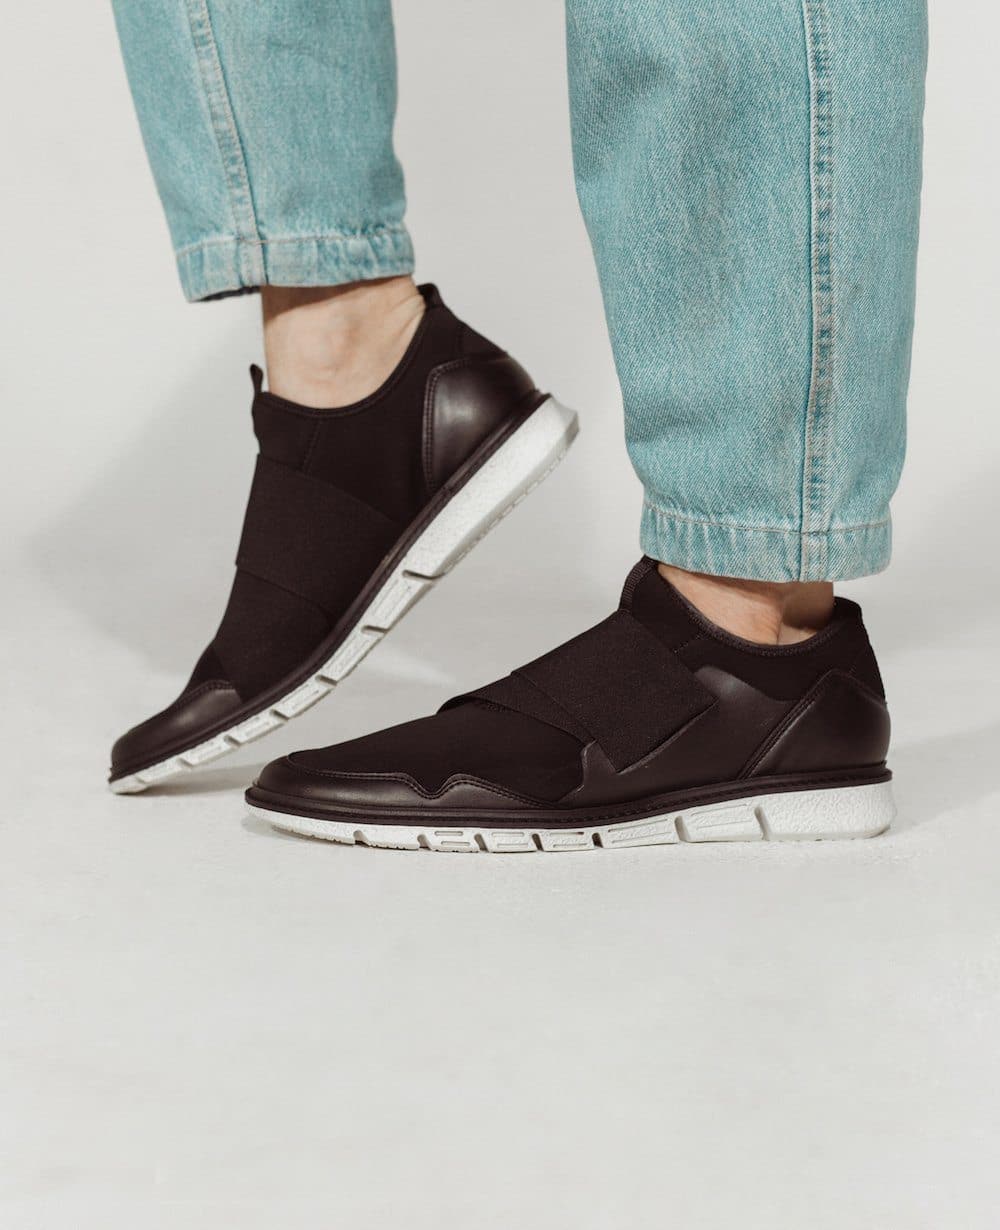 'Caspar' - men's vegan sneaker by Zette Shoes - black